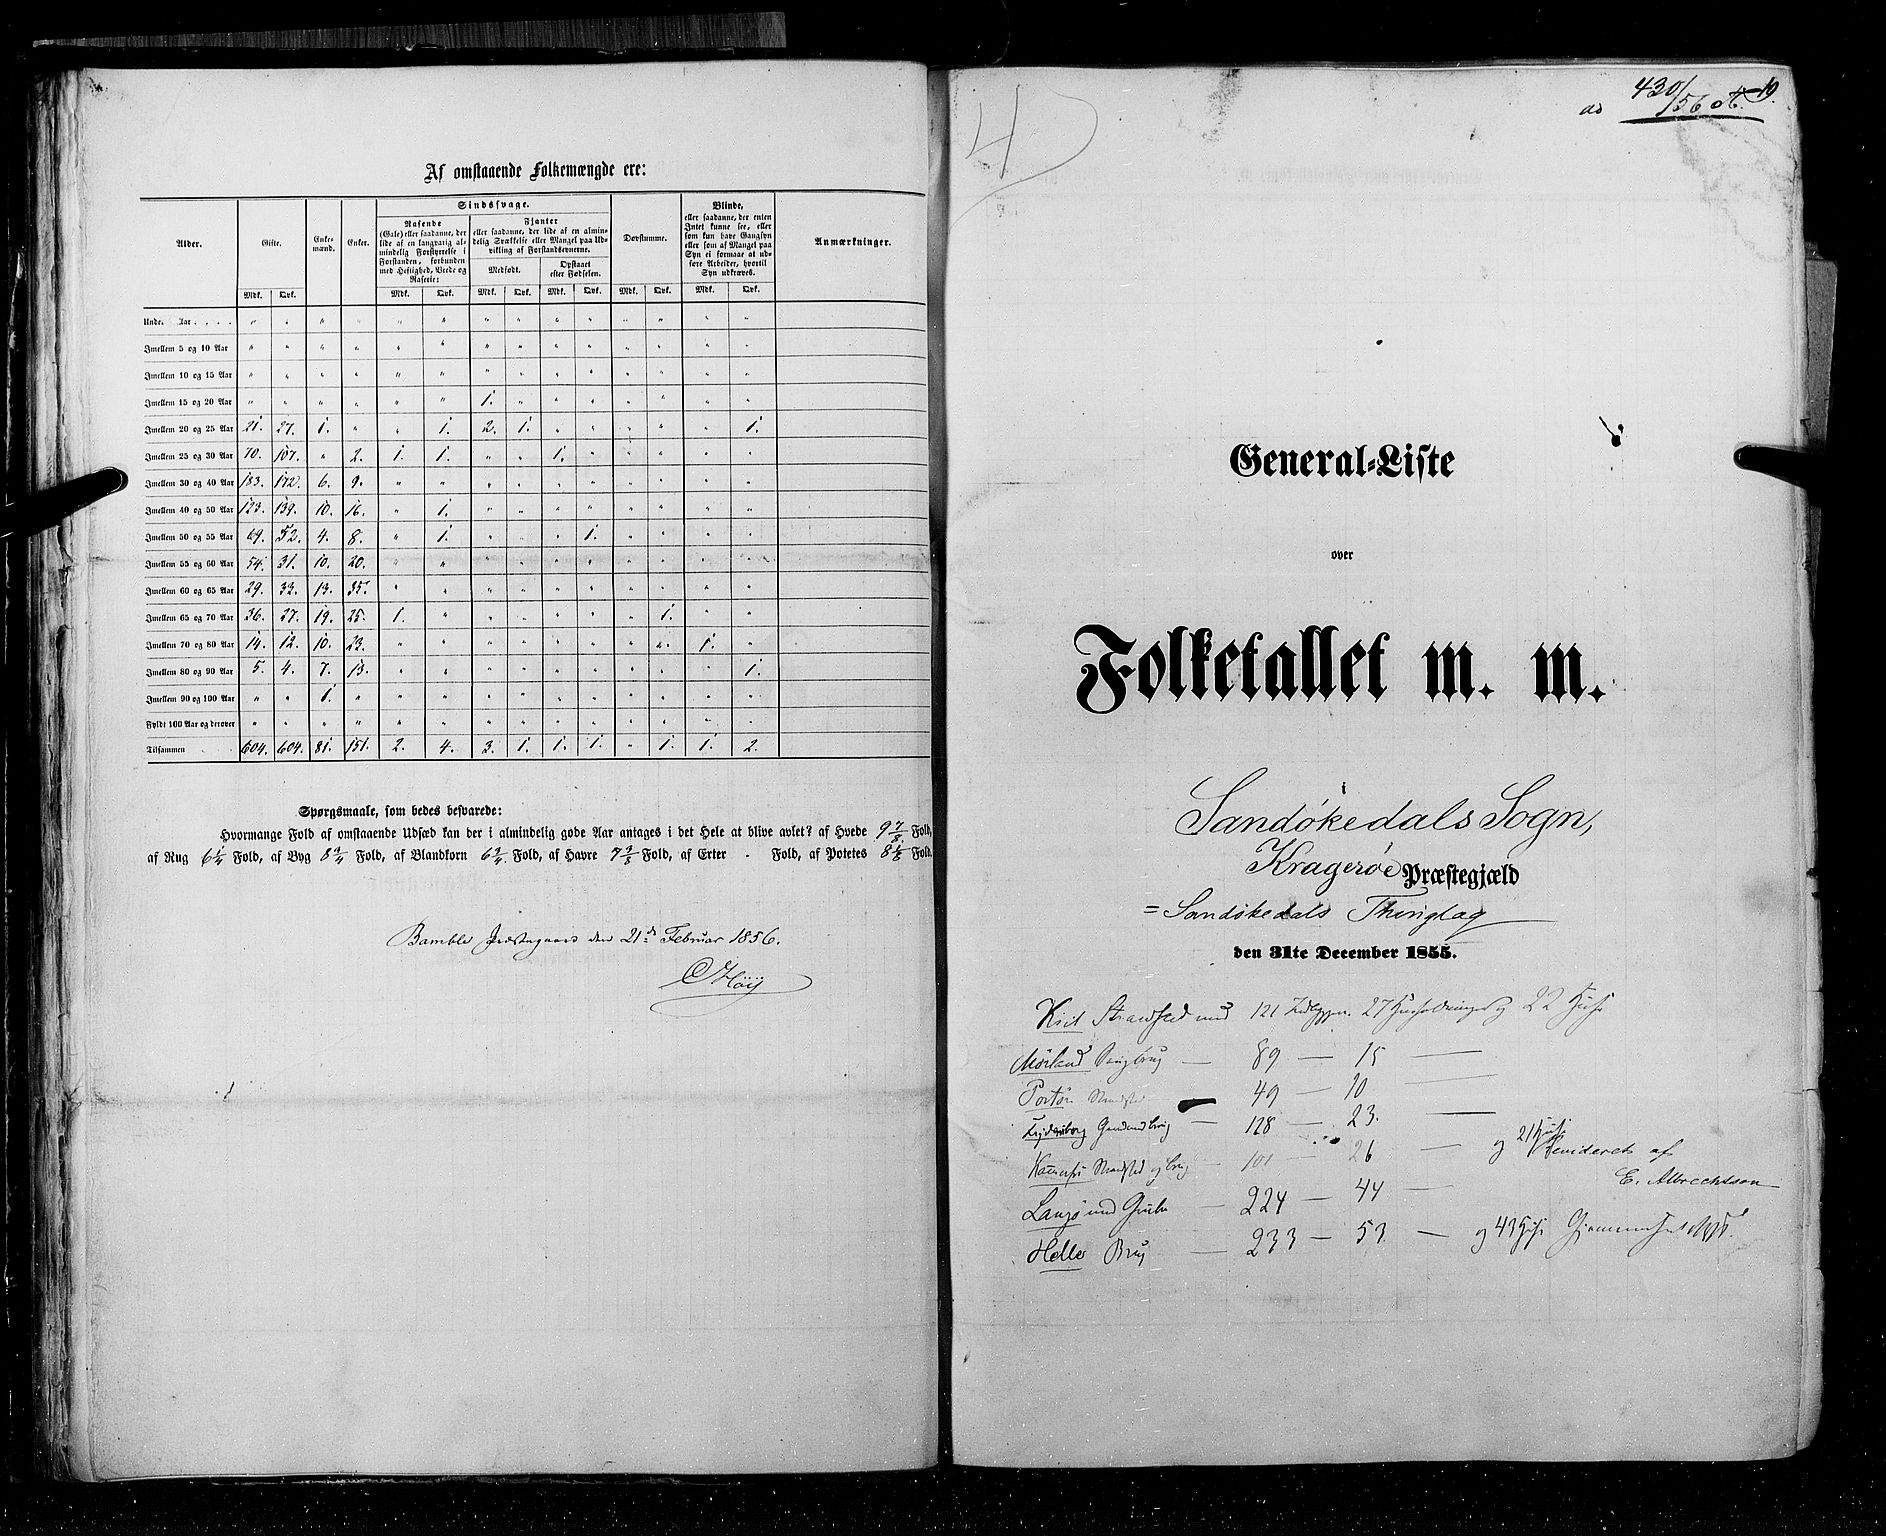 RA, Census 1855, vol. 3: Bratsberg amt, Nedenes amt og Lister og Mandal amt, 1855, p. 19